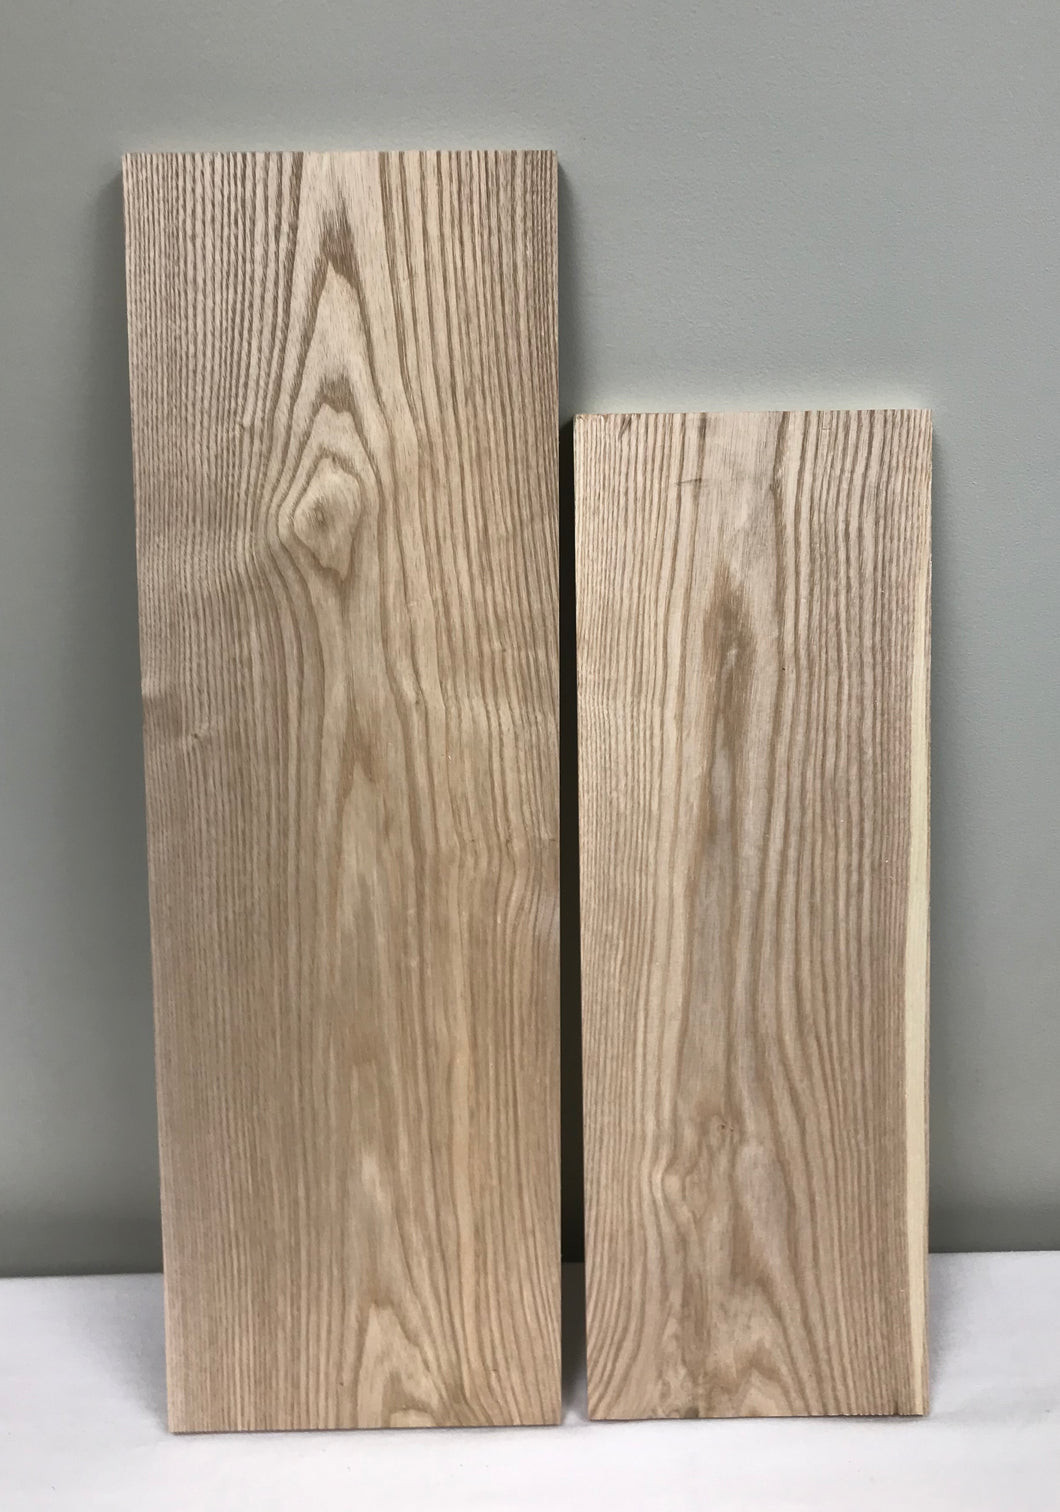 Ash Lumber - Short Length Lumber